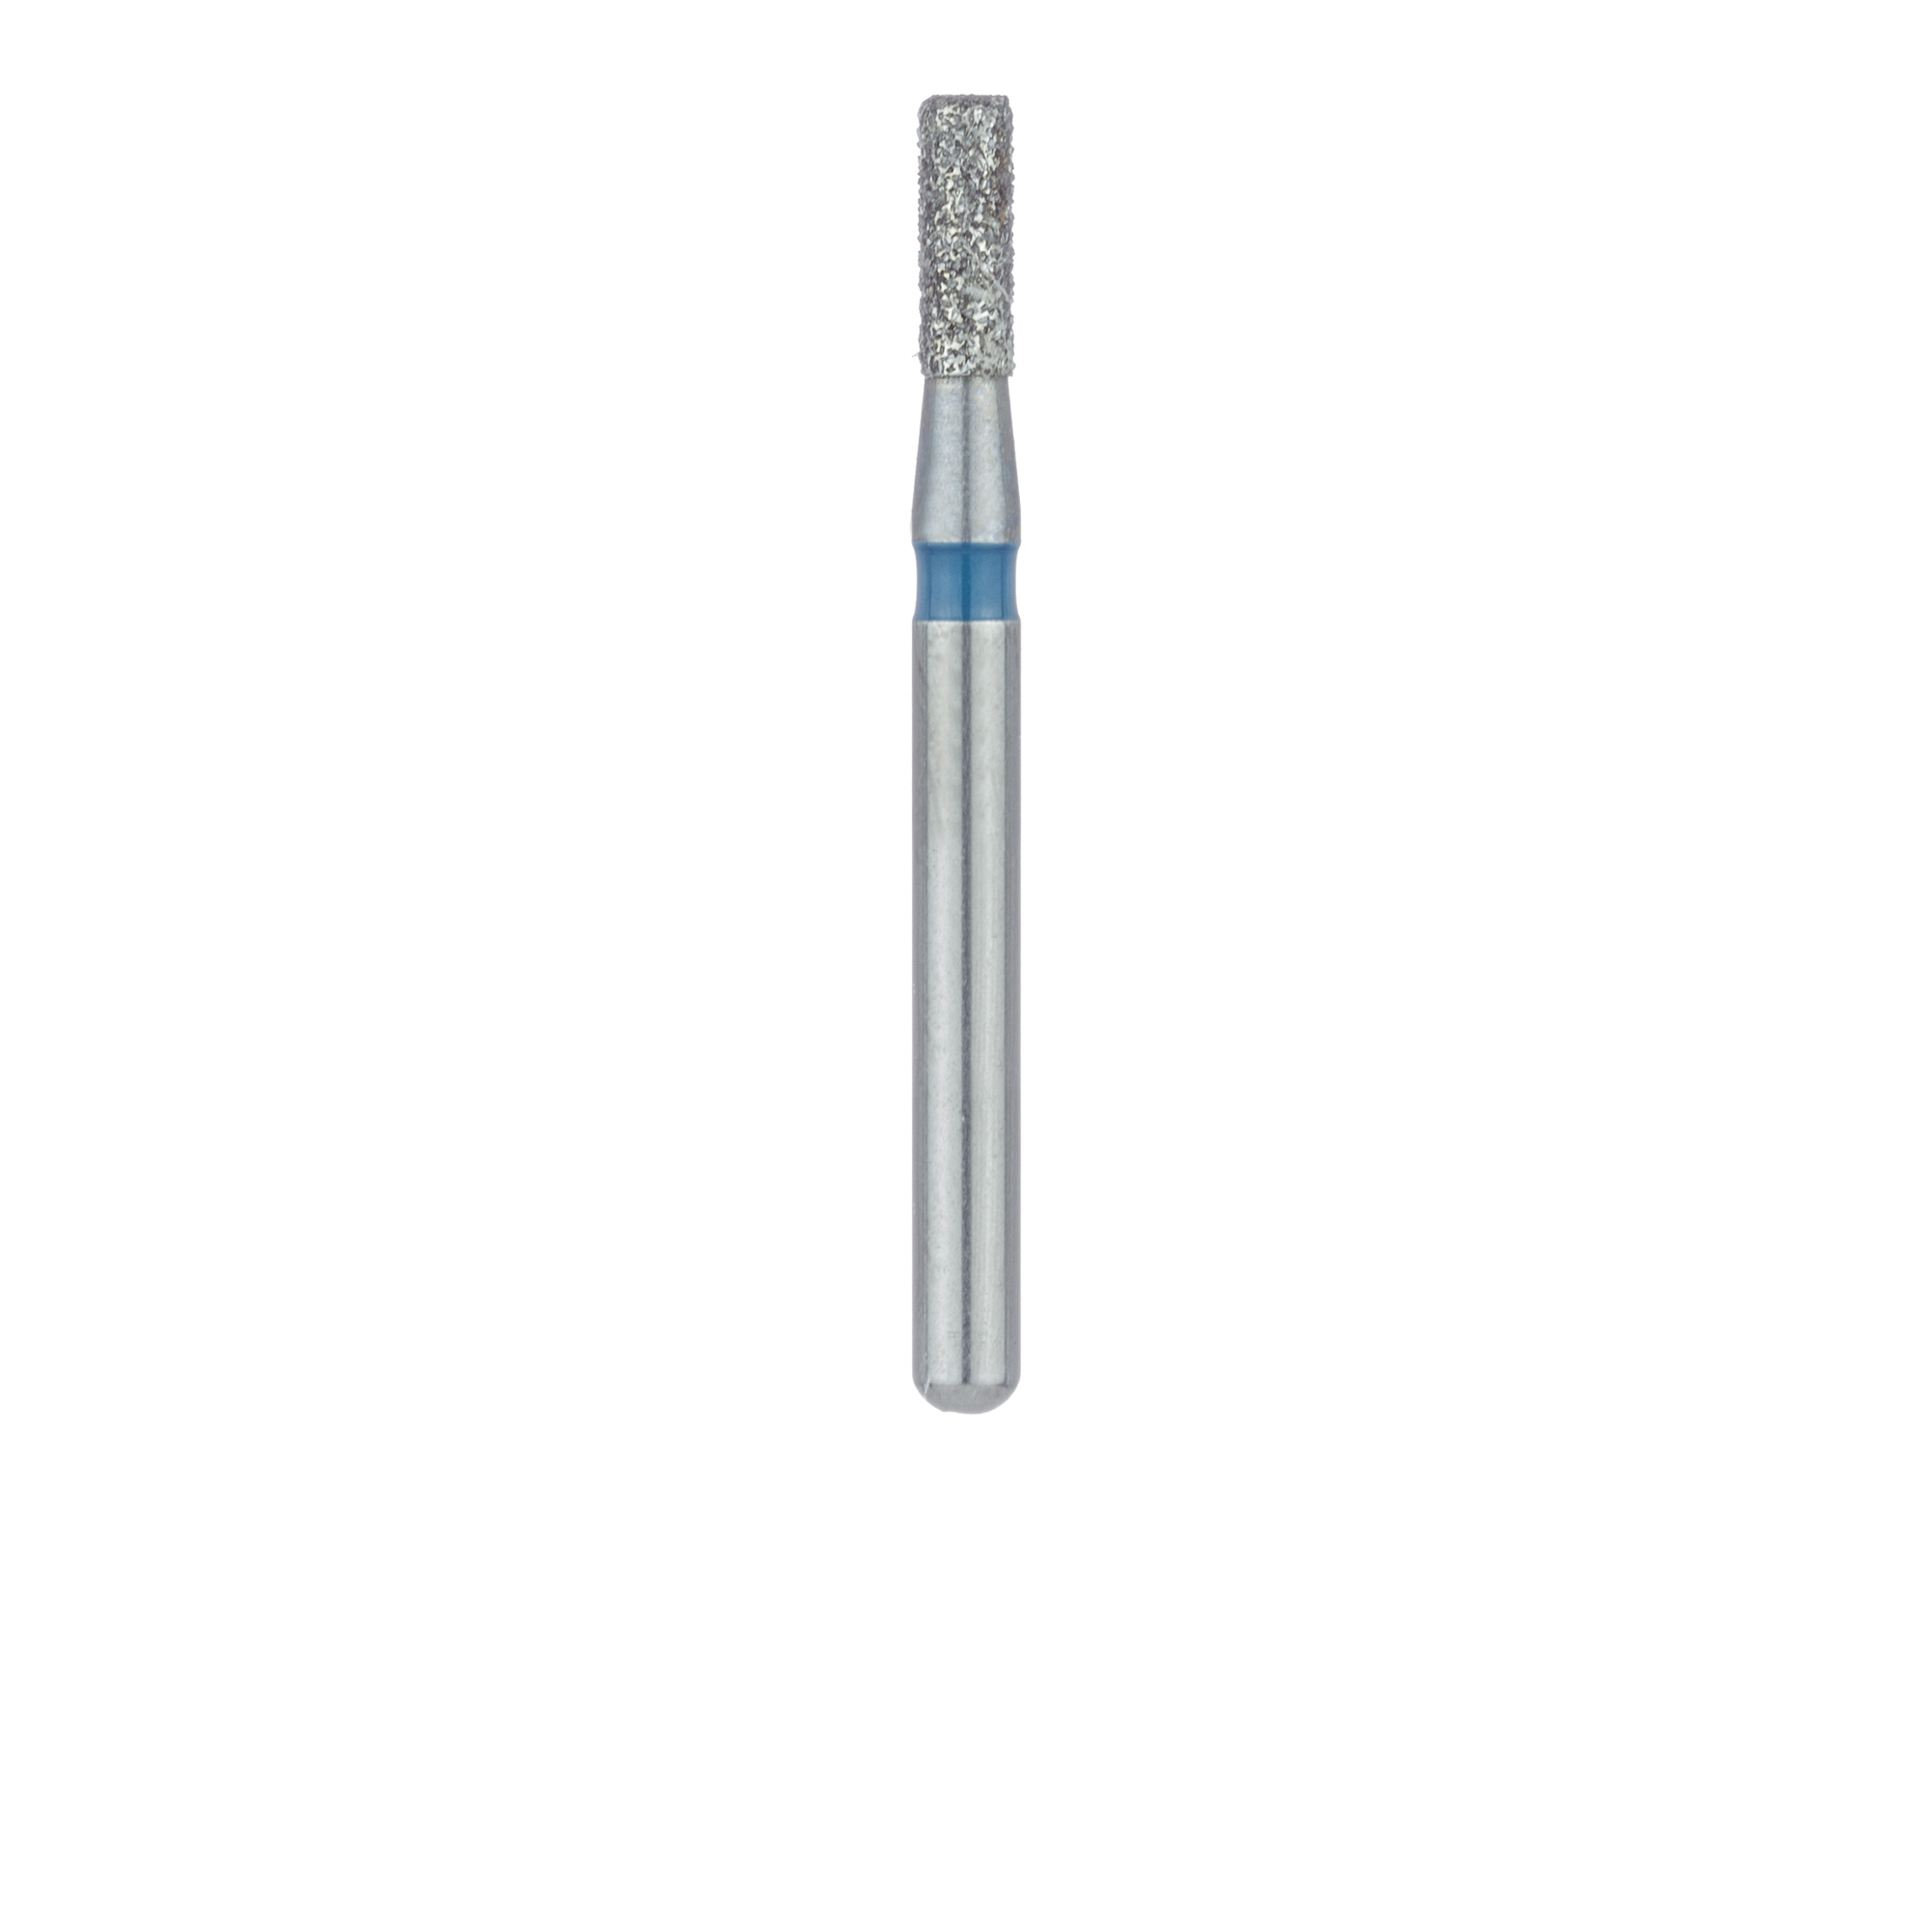 840-014-FG Round Edge Cylinder Diamond Bur, 1.4mm Ø, Medium, FG